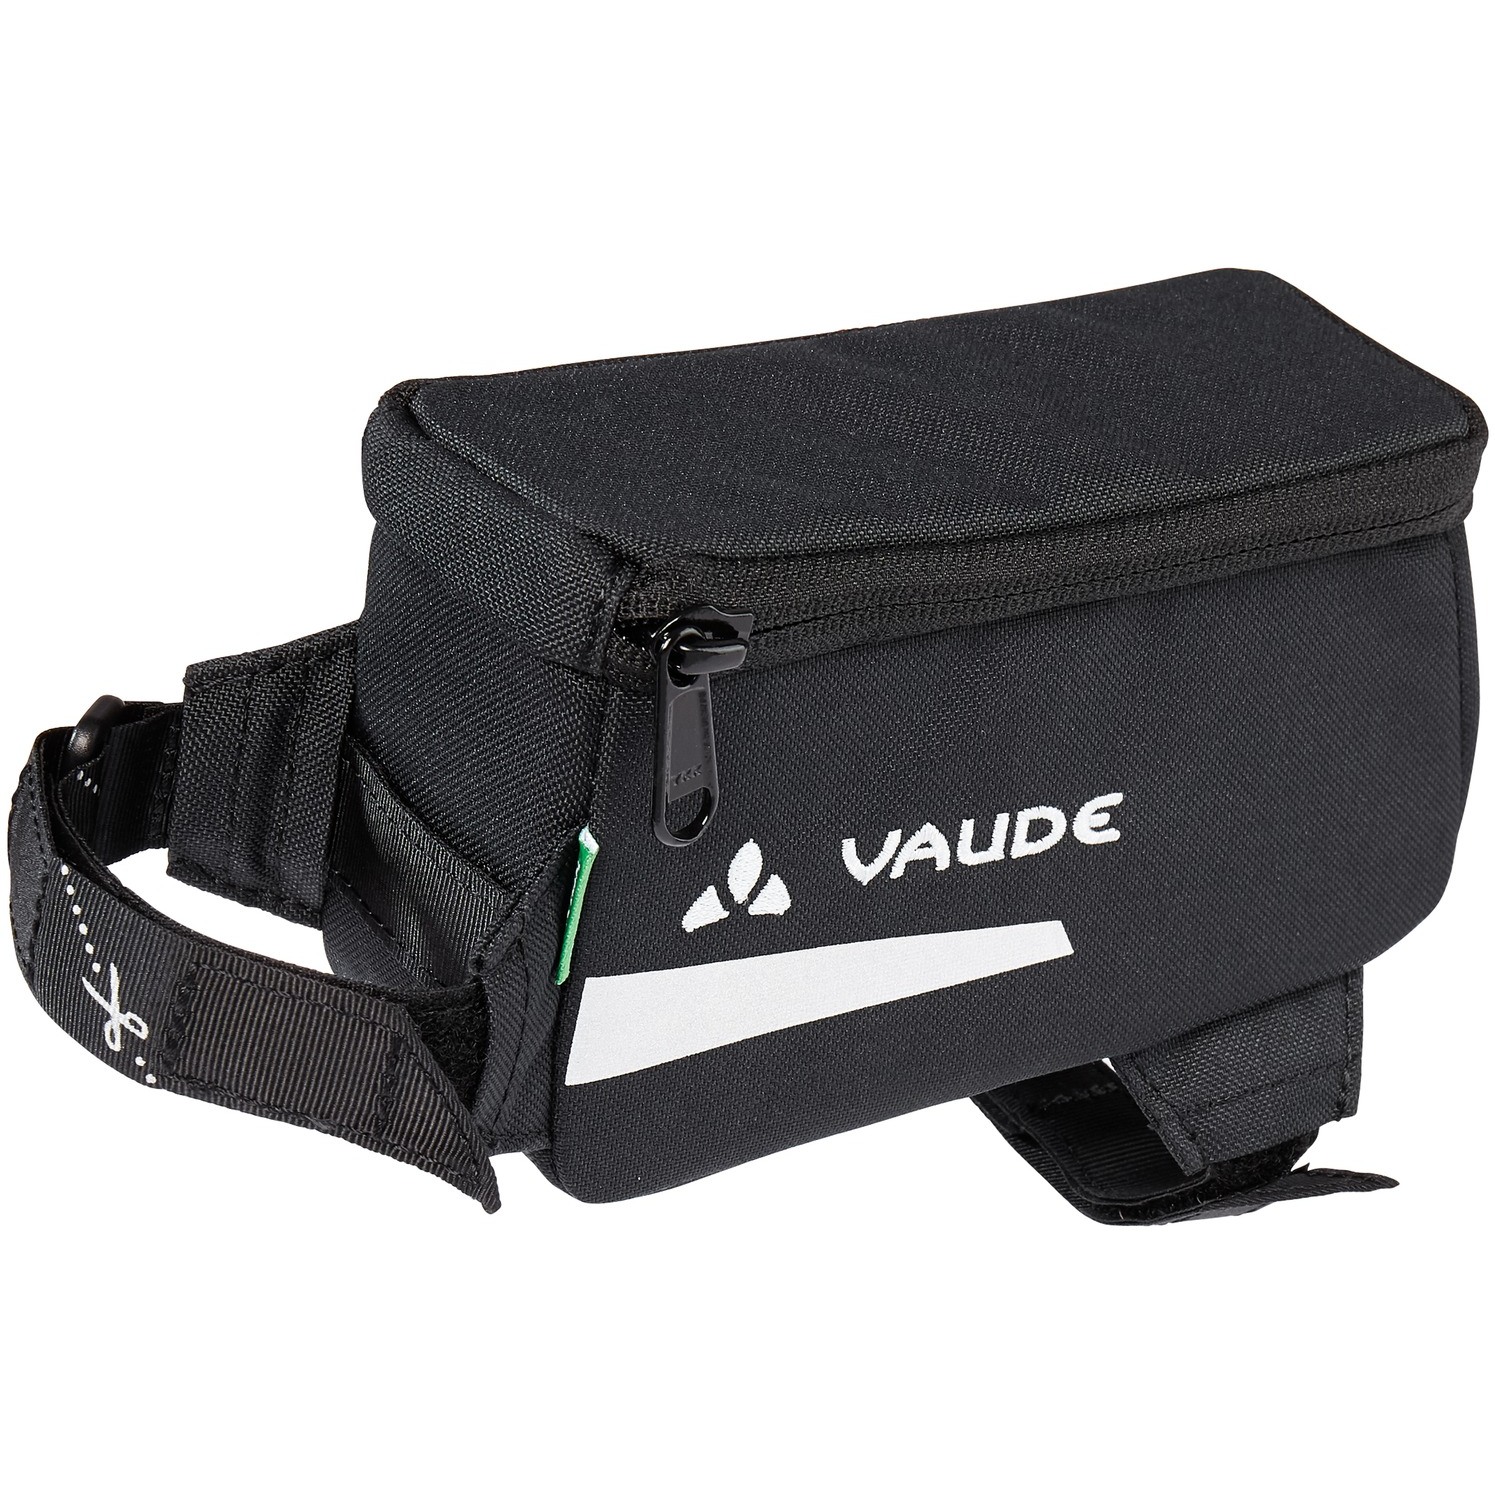 Produktbild von Vaude Carbo Bag II Fahrradtasche 0.7L - schwarz